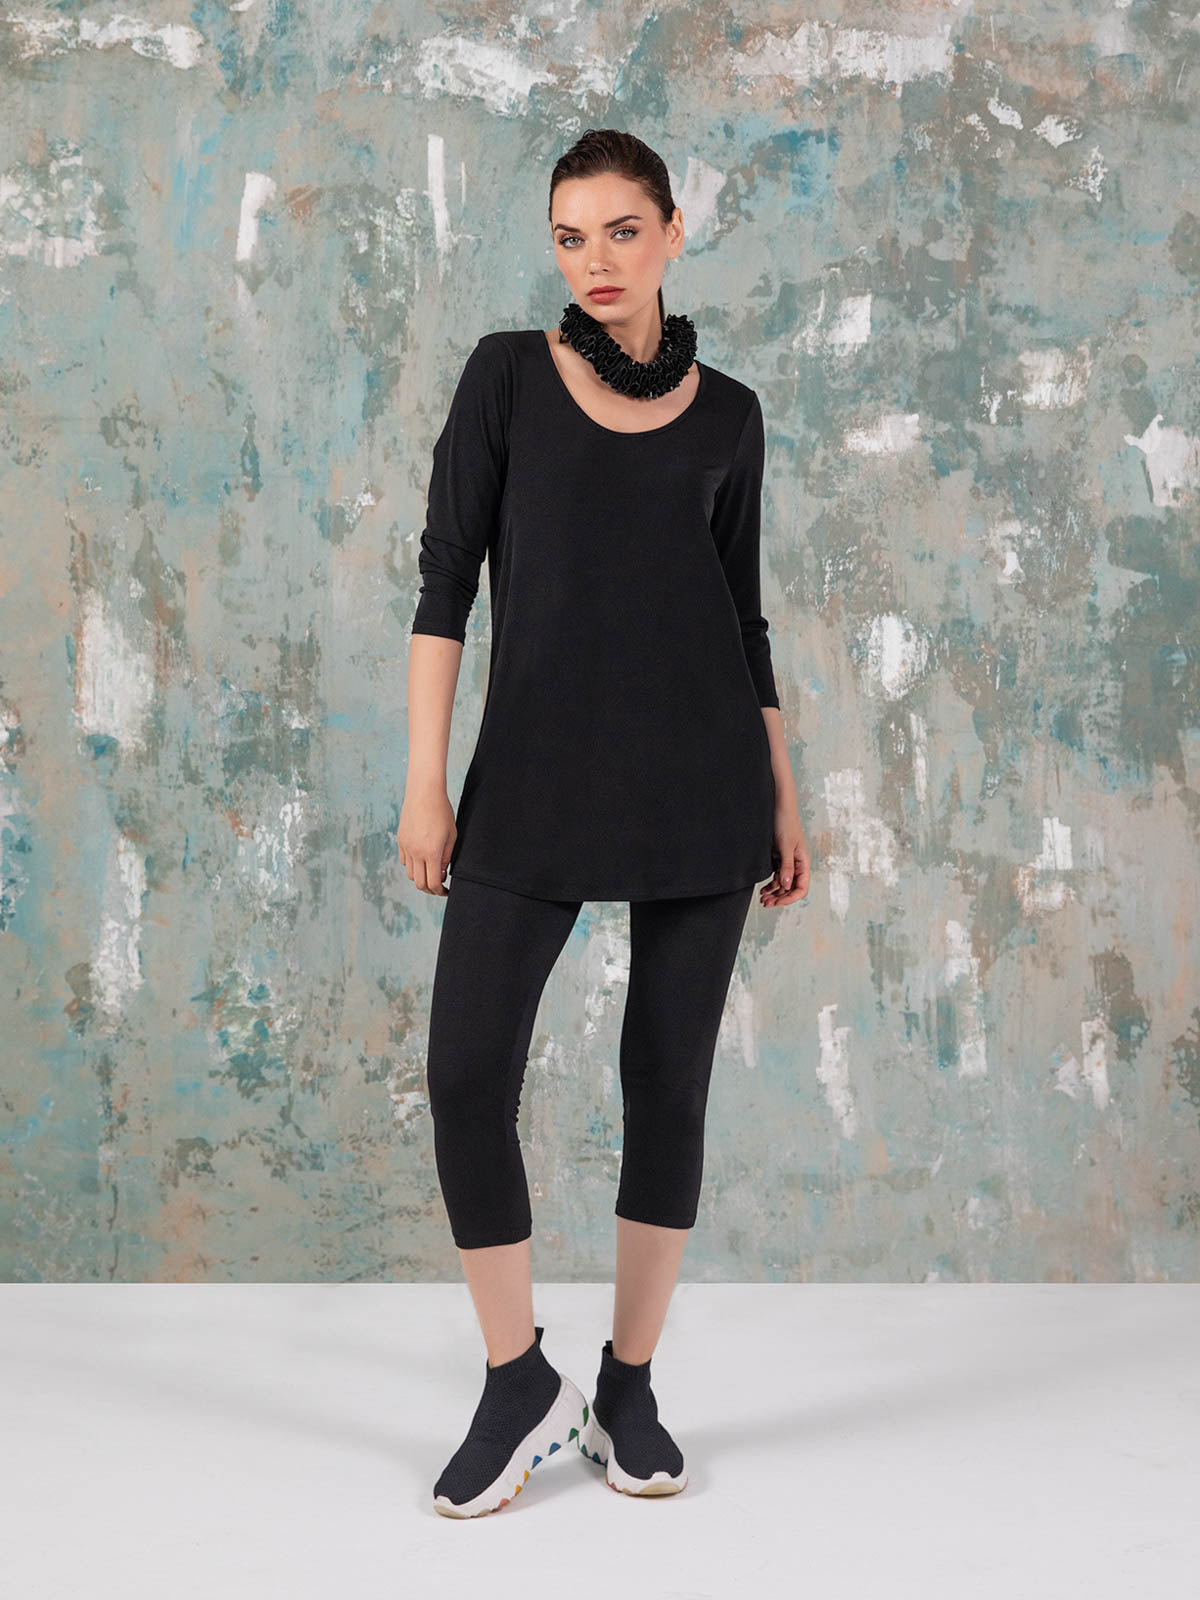 Kozan Janelle Tunic, Black Vogue - Statement Boutique